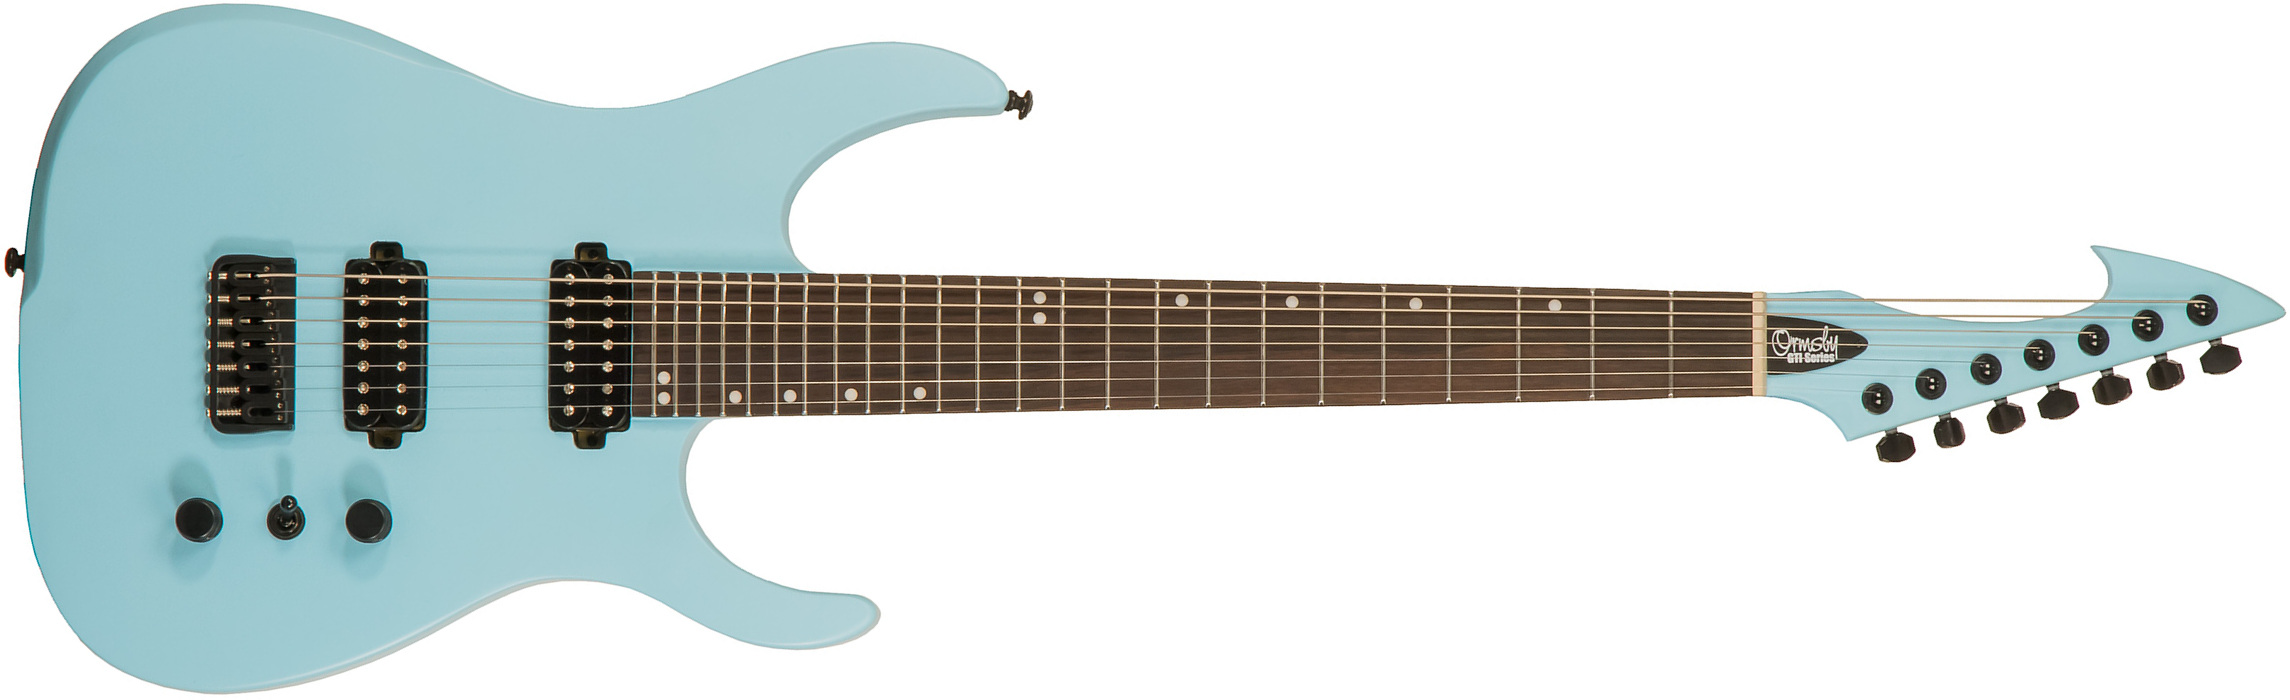 Ormsby Hype Gti-s 7 Standard Scale Hh Ht Eb - Opaline Blue - 7-saitige E-Gitarre - Main picture